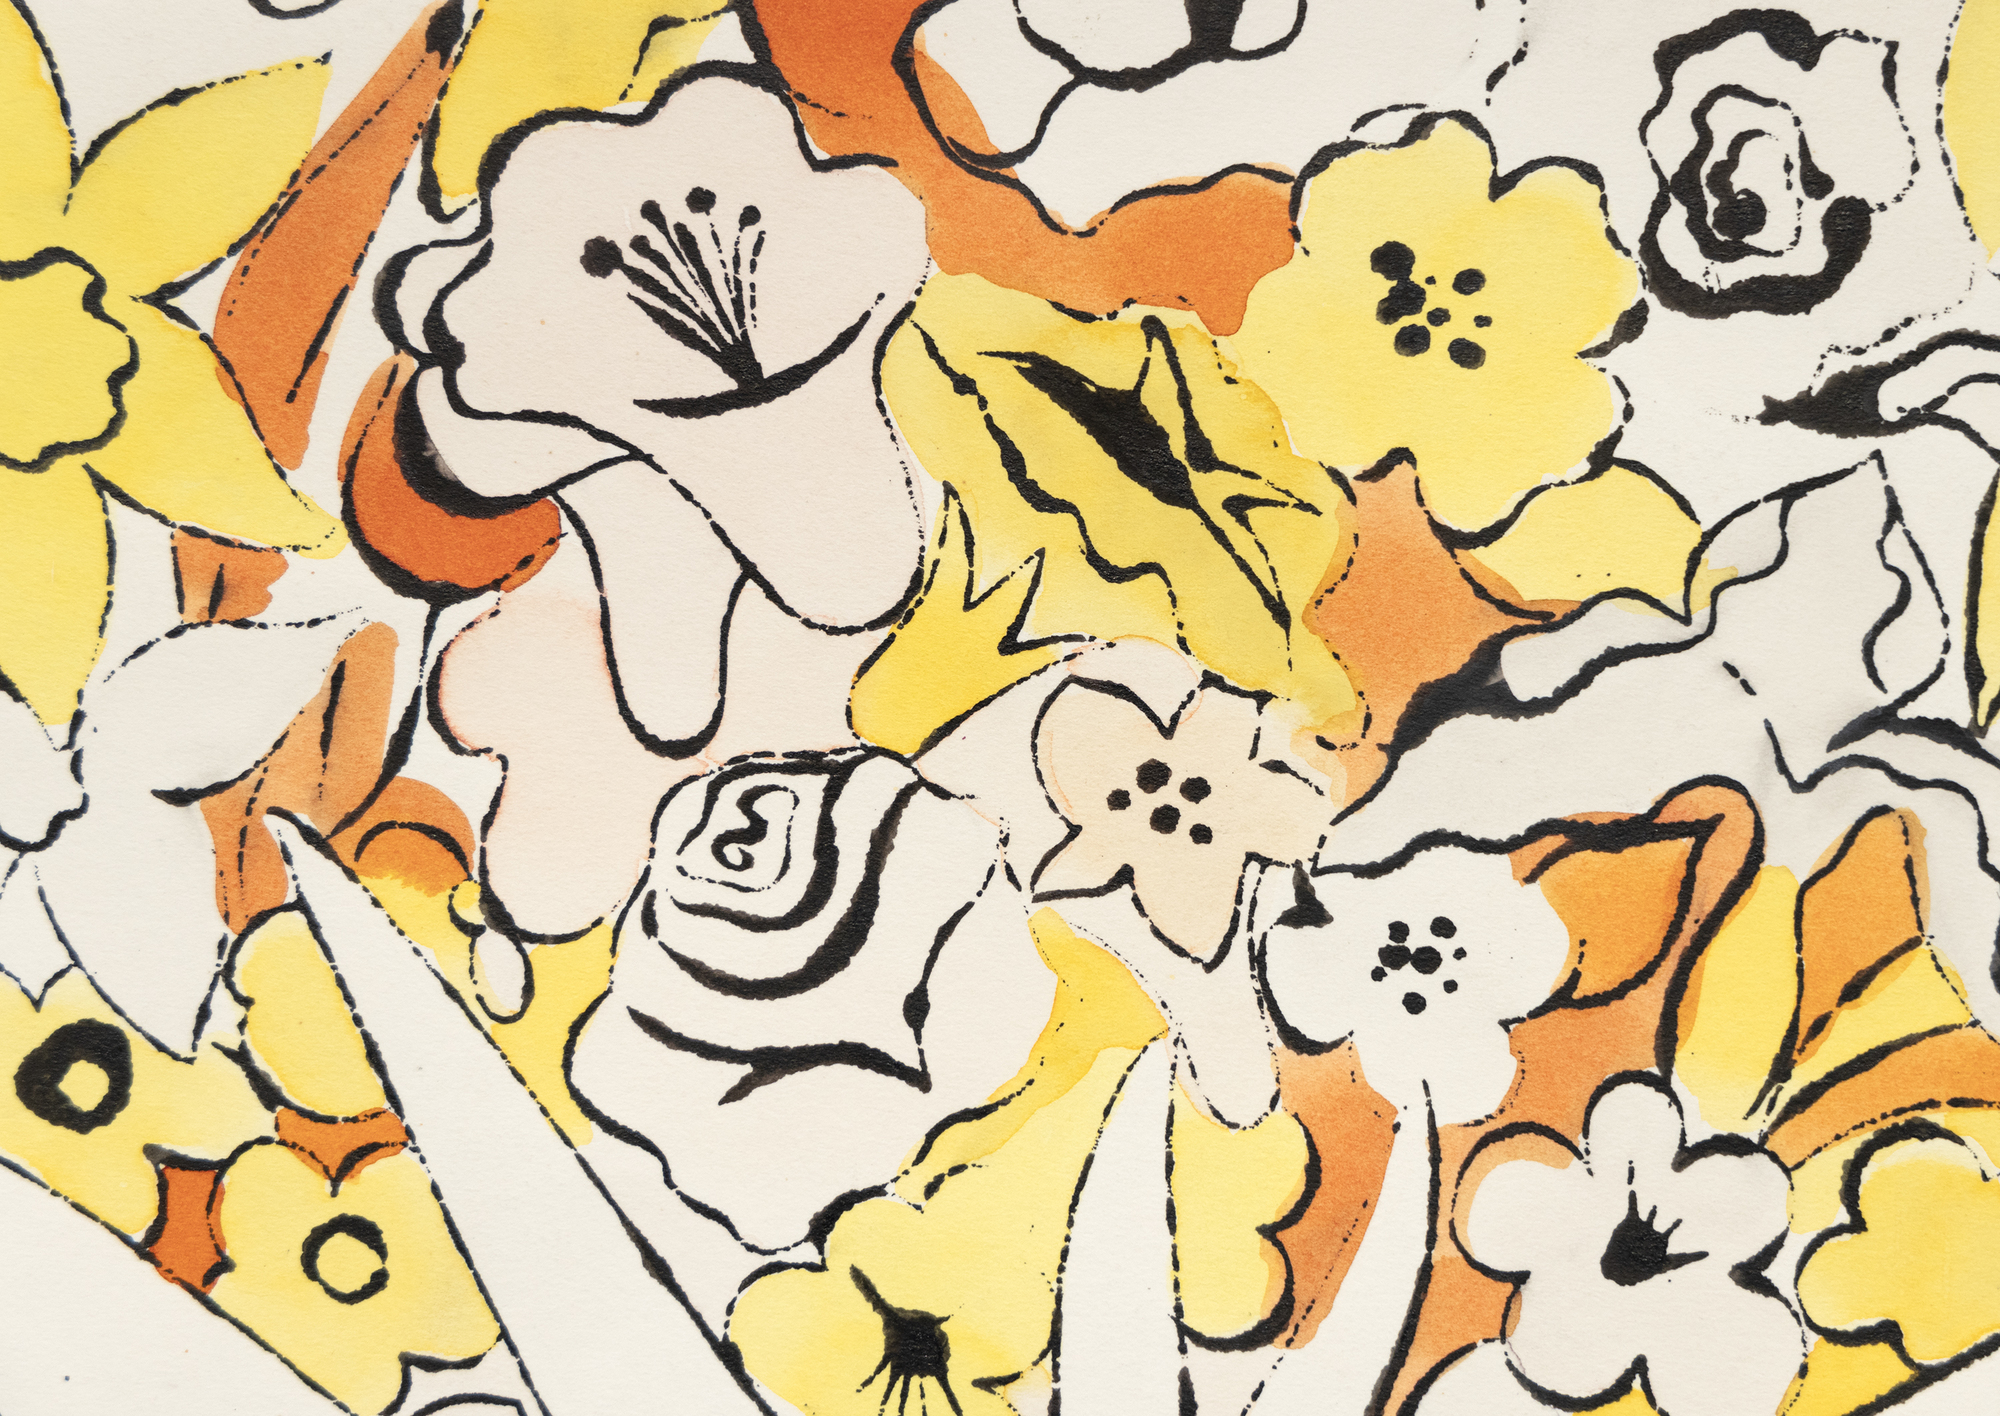 רישומי הדיו וצבע הצבע של וורהול מציגים את כישרון צמצום המוטיבים והאלמנטים לטבעם המהותי תוך שימוש בכלכלה של קווים ושובבות נפלאה המאפיינת כל אחד מהם. לעתים קרובות הם מזכירים לנו שאמנות יכולה להיות הספקית יעילה ביותר של הומור וגחמנות אם אינה מסובכת וזורמת בחופשיות. ללא כותרת, פרחים הוא הקדמה של הפריסה המפורסמת שלו בווג 1960, המשלבת ציורים של פרחים בצבעי ניאון. הוא צופה את נטייתו המוקדמת של וורהול להפריד בין קו לצבע, מכשיר שמאוחר יותר יעניק לדימויי מסך המשי שלו את המיידיות המופשטת שלהם.